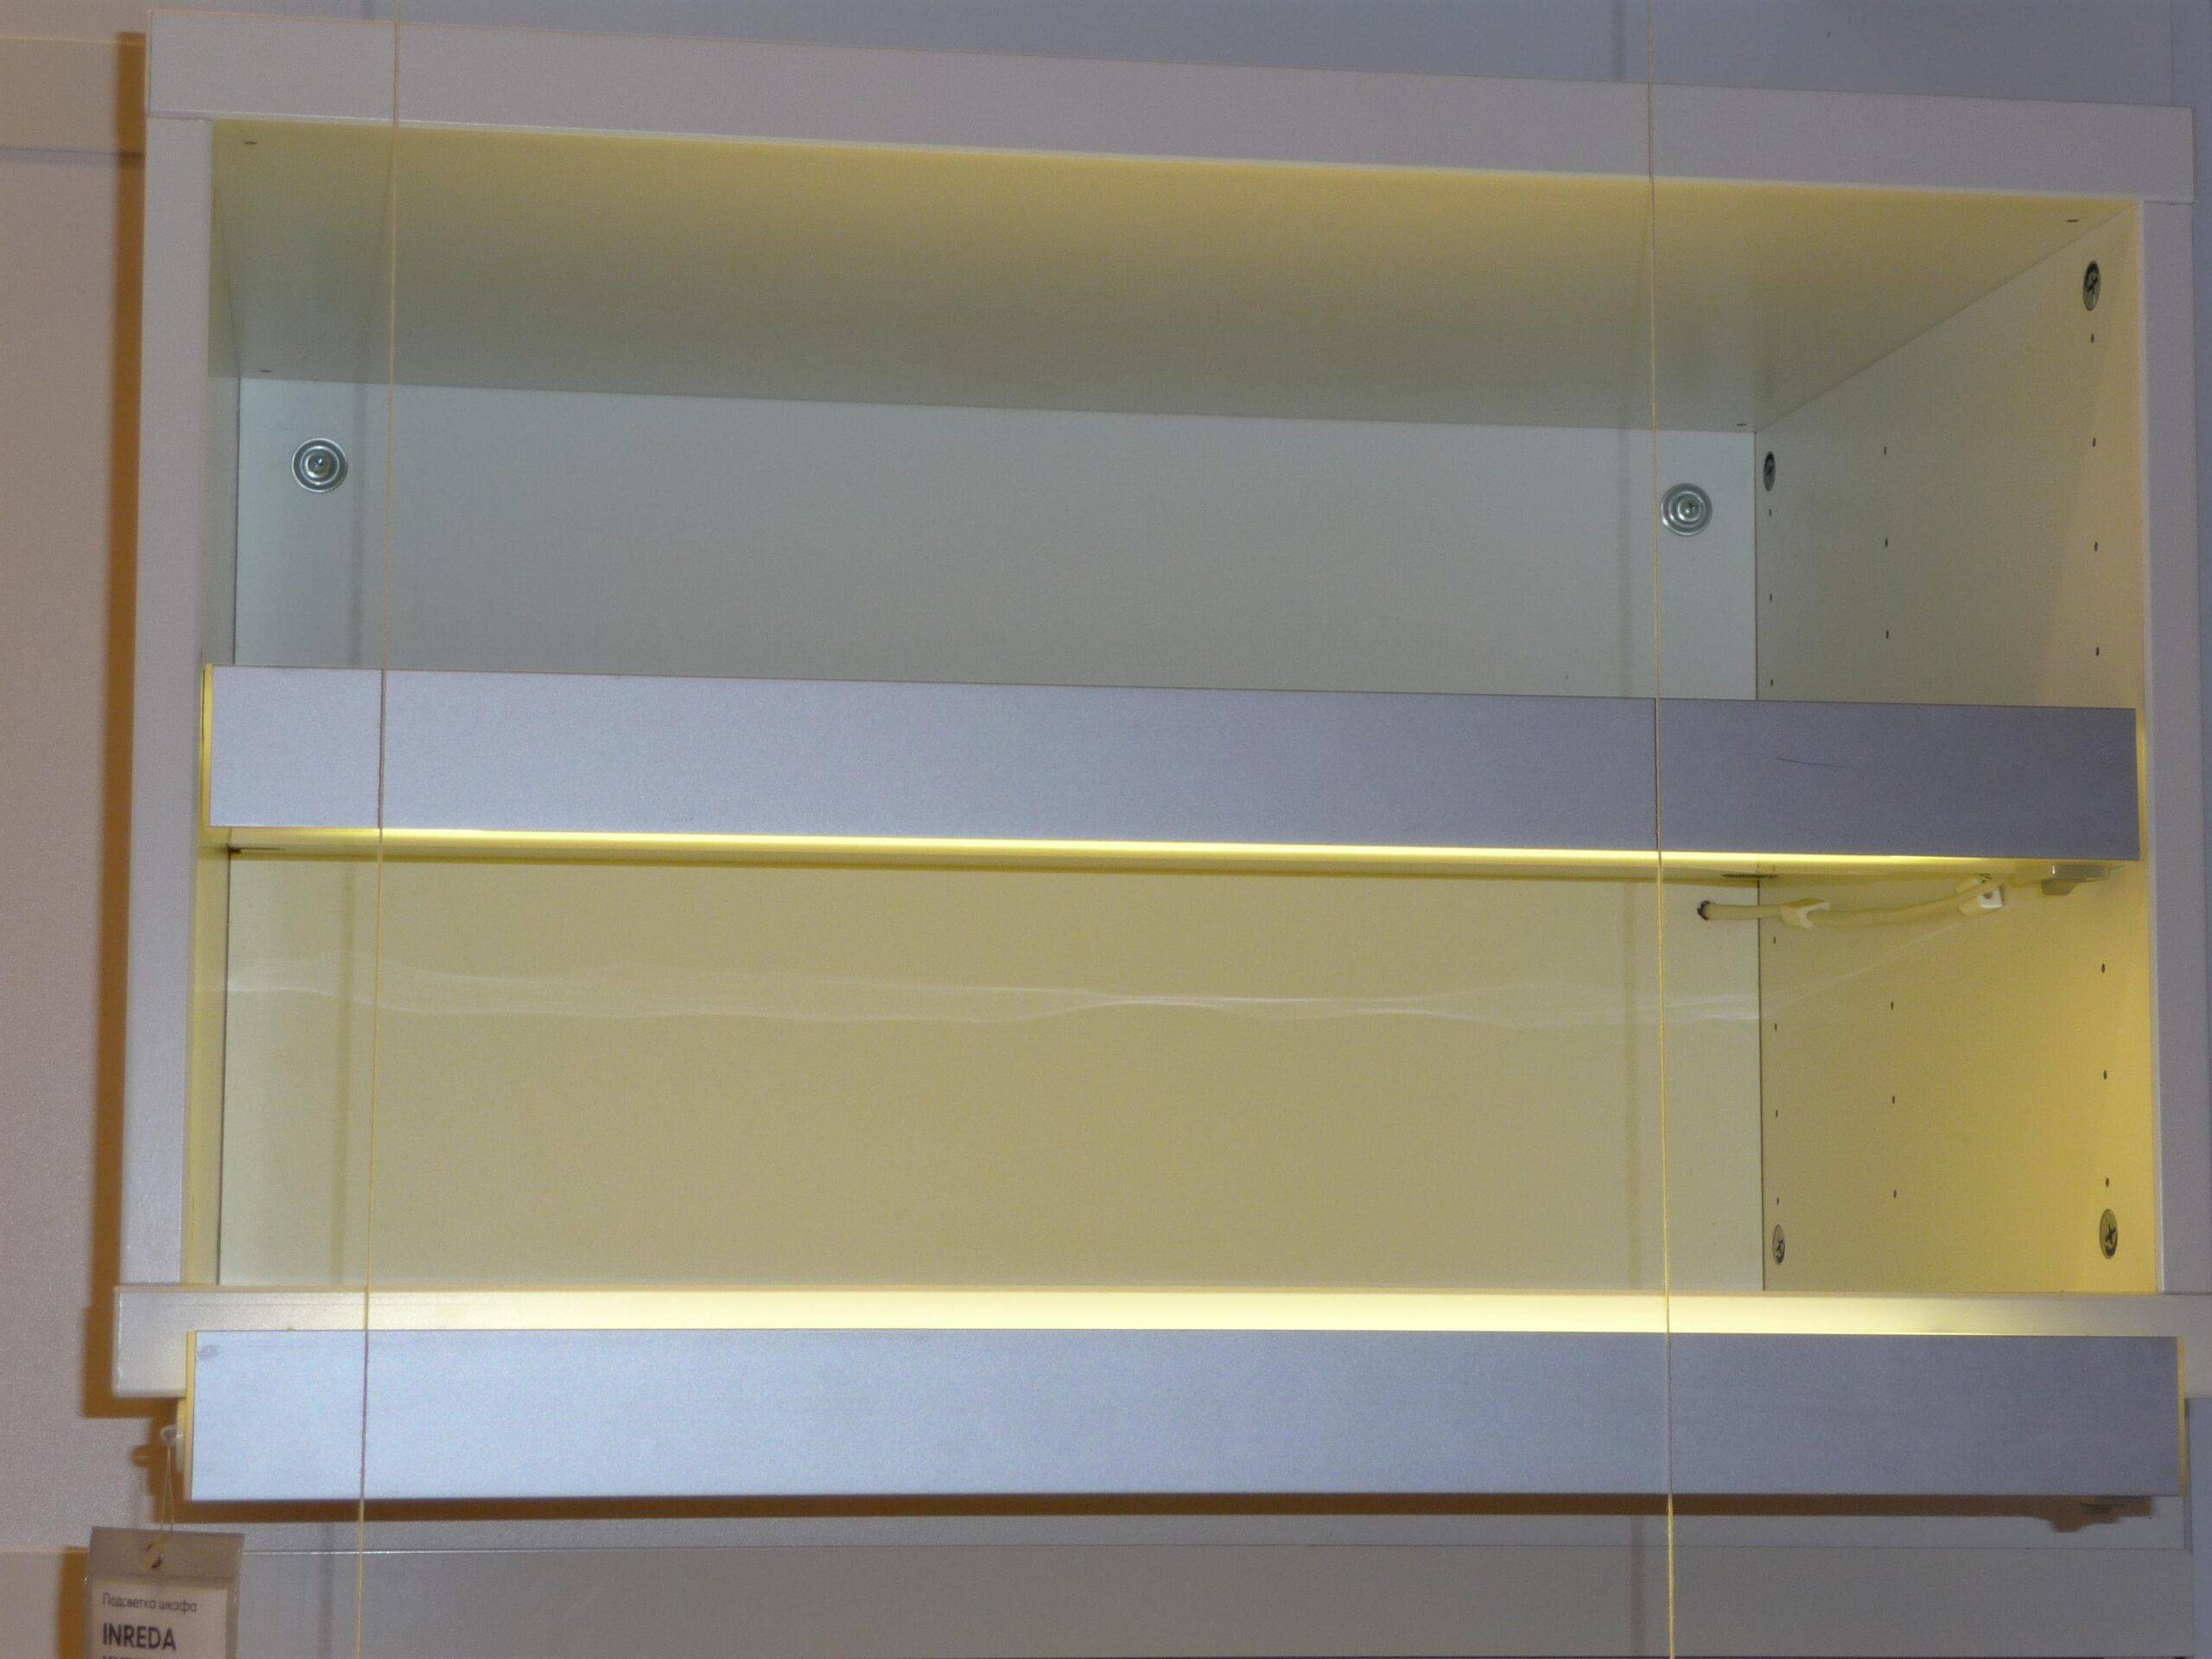 Подсветка шкафа светодиодной лентой: фото, пошаговая инстркция